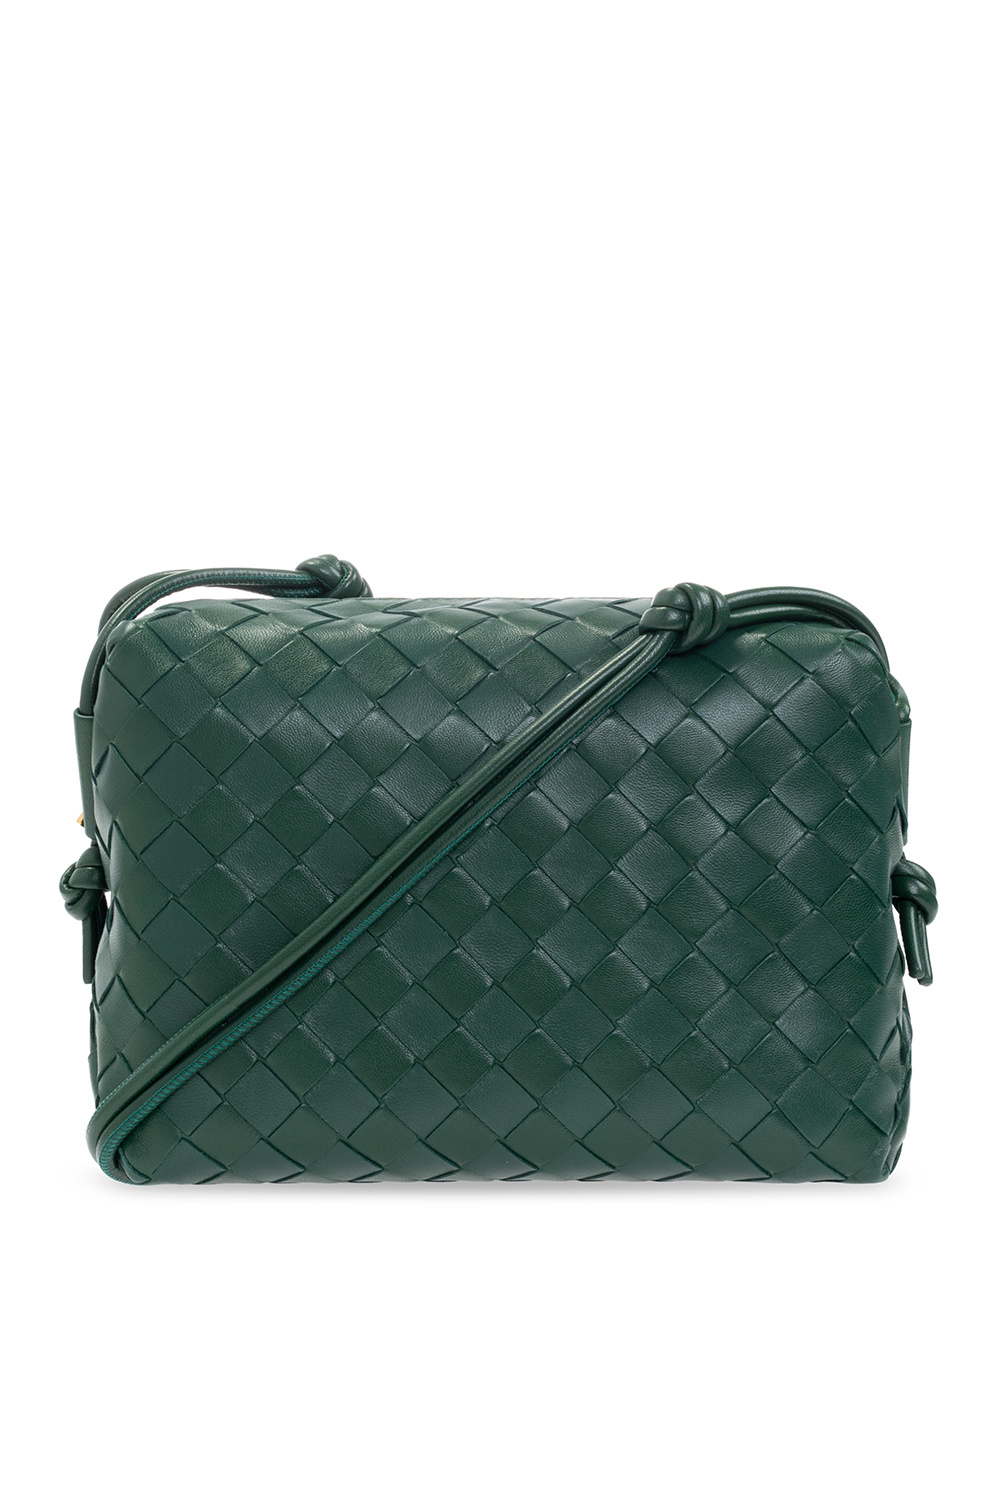 Green 'Loop' shoulder bag Bottega Veneta - Vitkac HK